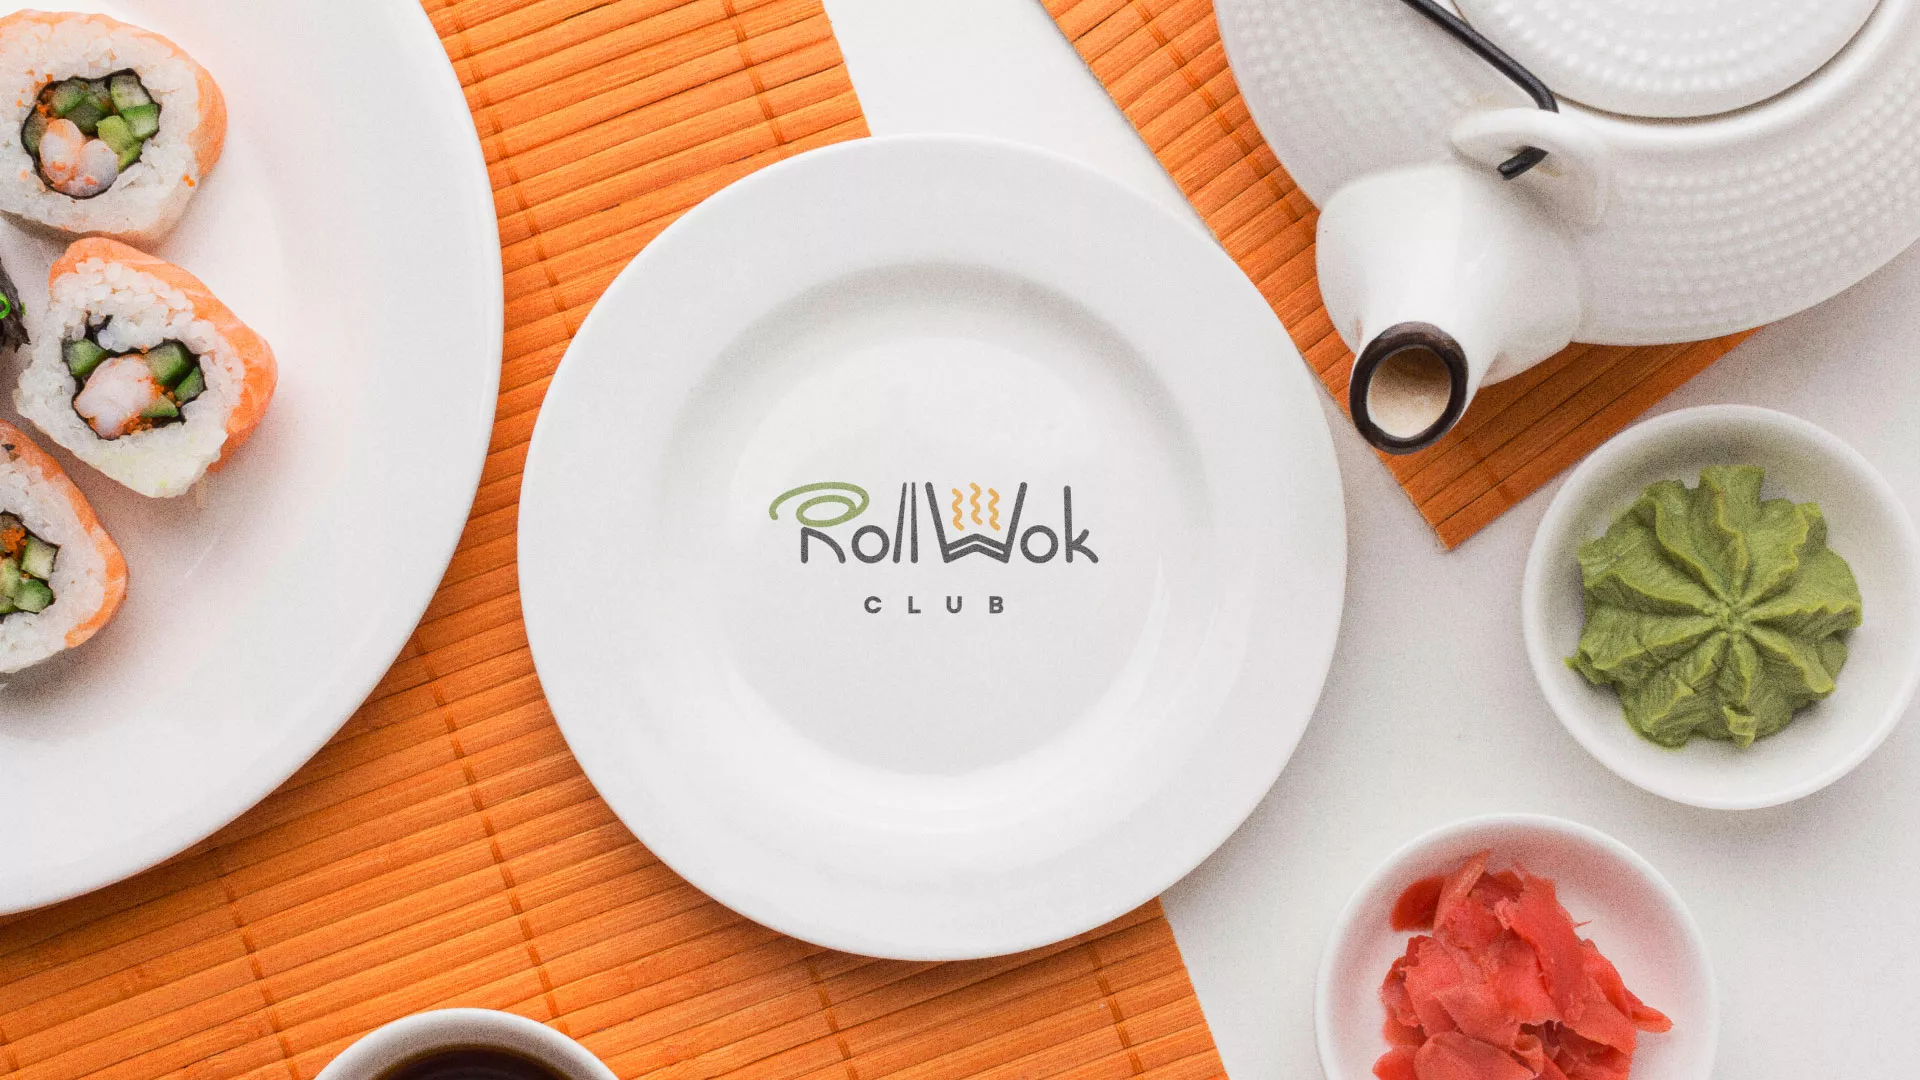 Разработка логотипа и фирменного стиля суши-бара «Roll Wok Club» в Шахунье